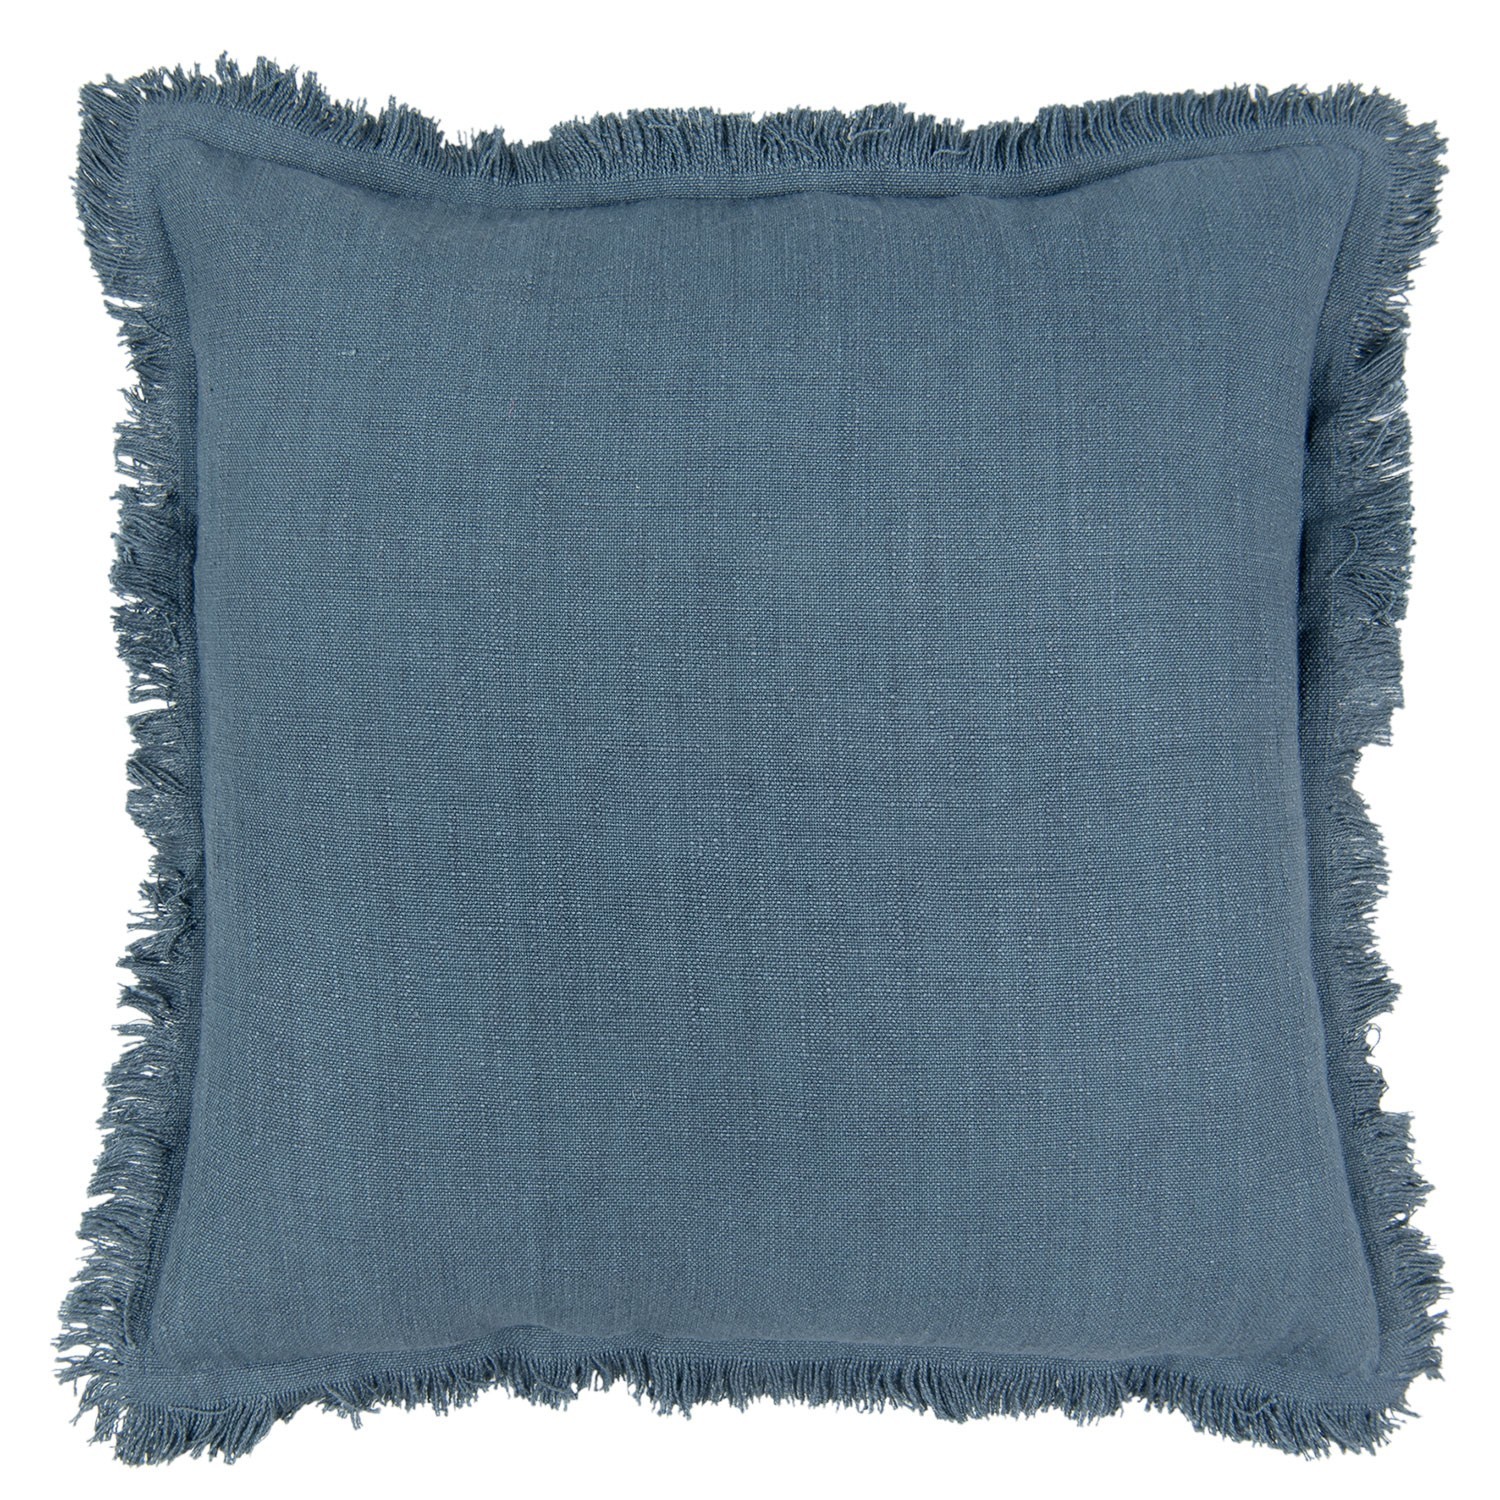 Tmavě modrý bavlněný polštář s trásněmi - 45*45 cm KG023.026DBL